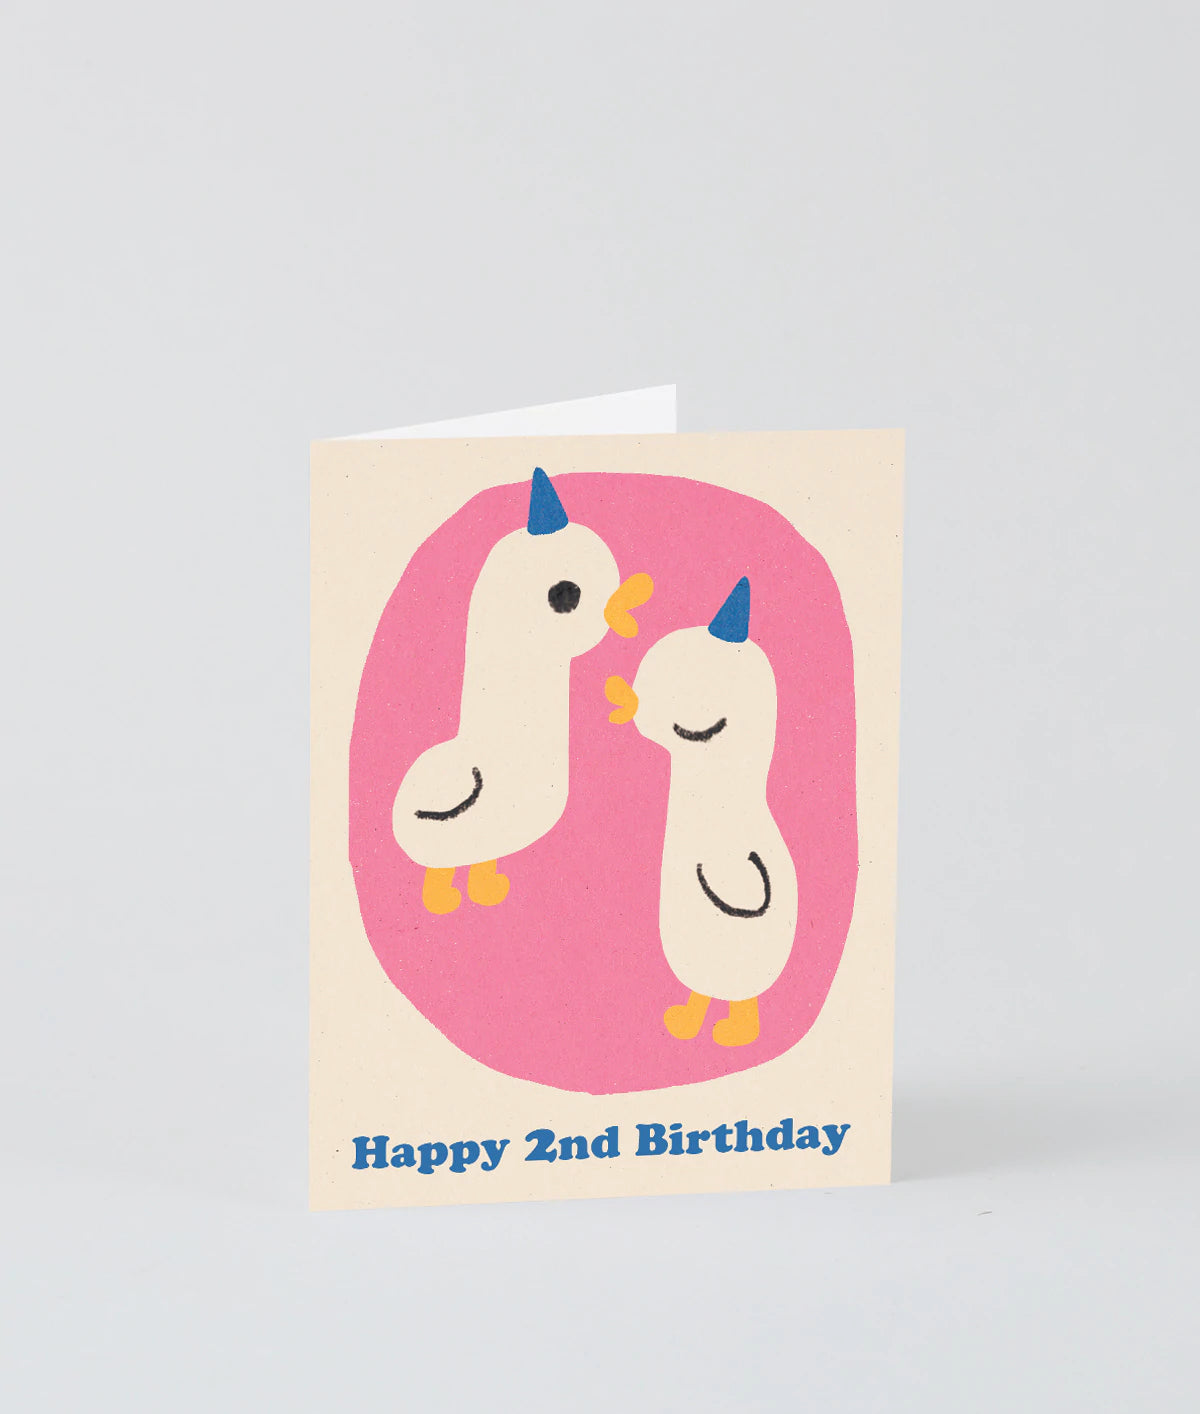 Wrap kids - Happy 2nd Birthday Card